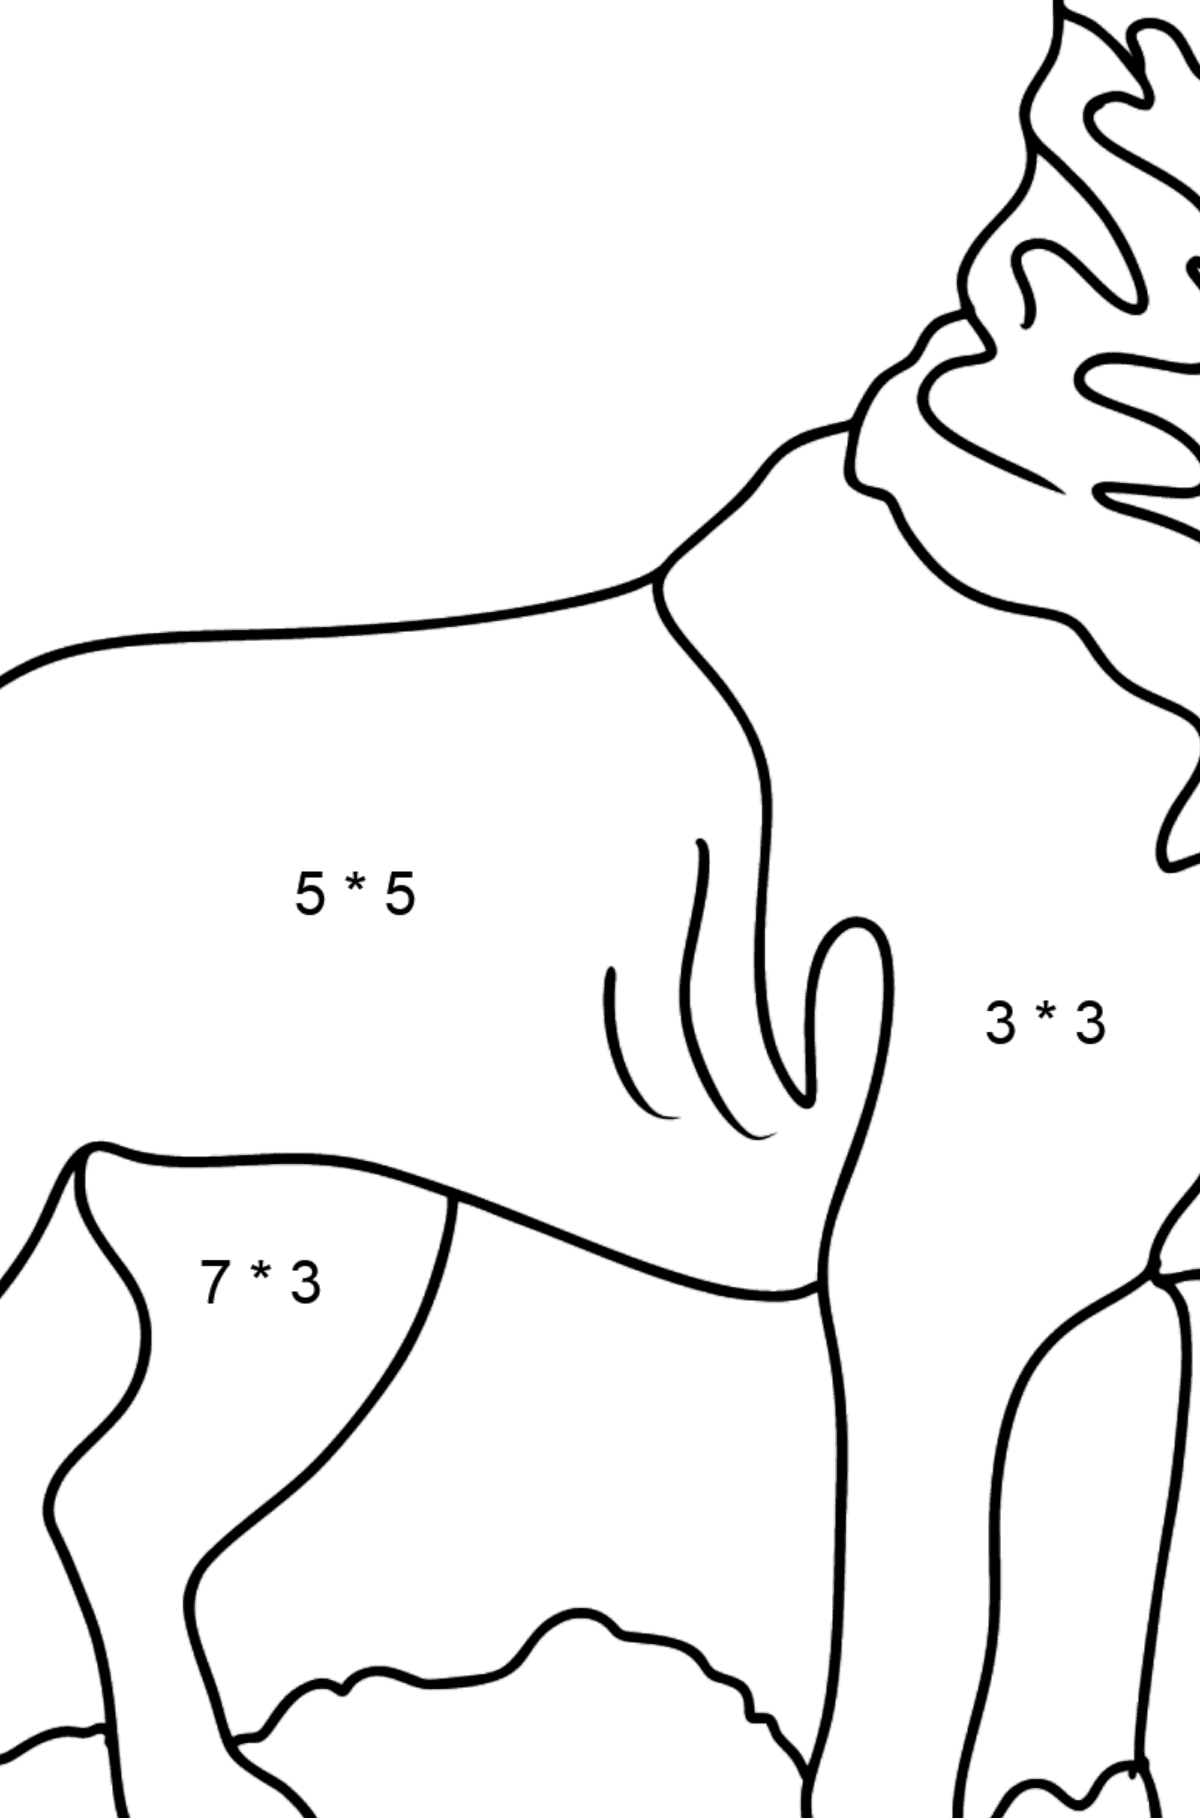 Desenho de Rottweiler para colorir - Colorindo com Matemática - Multiplicação para Crianças